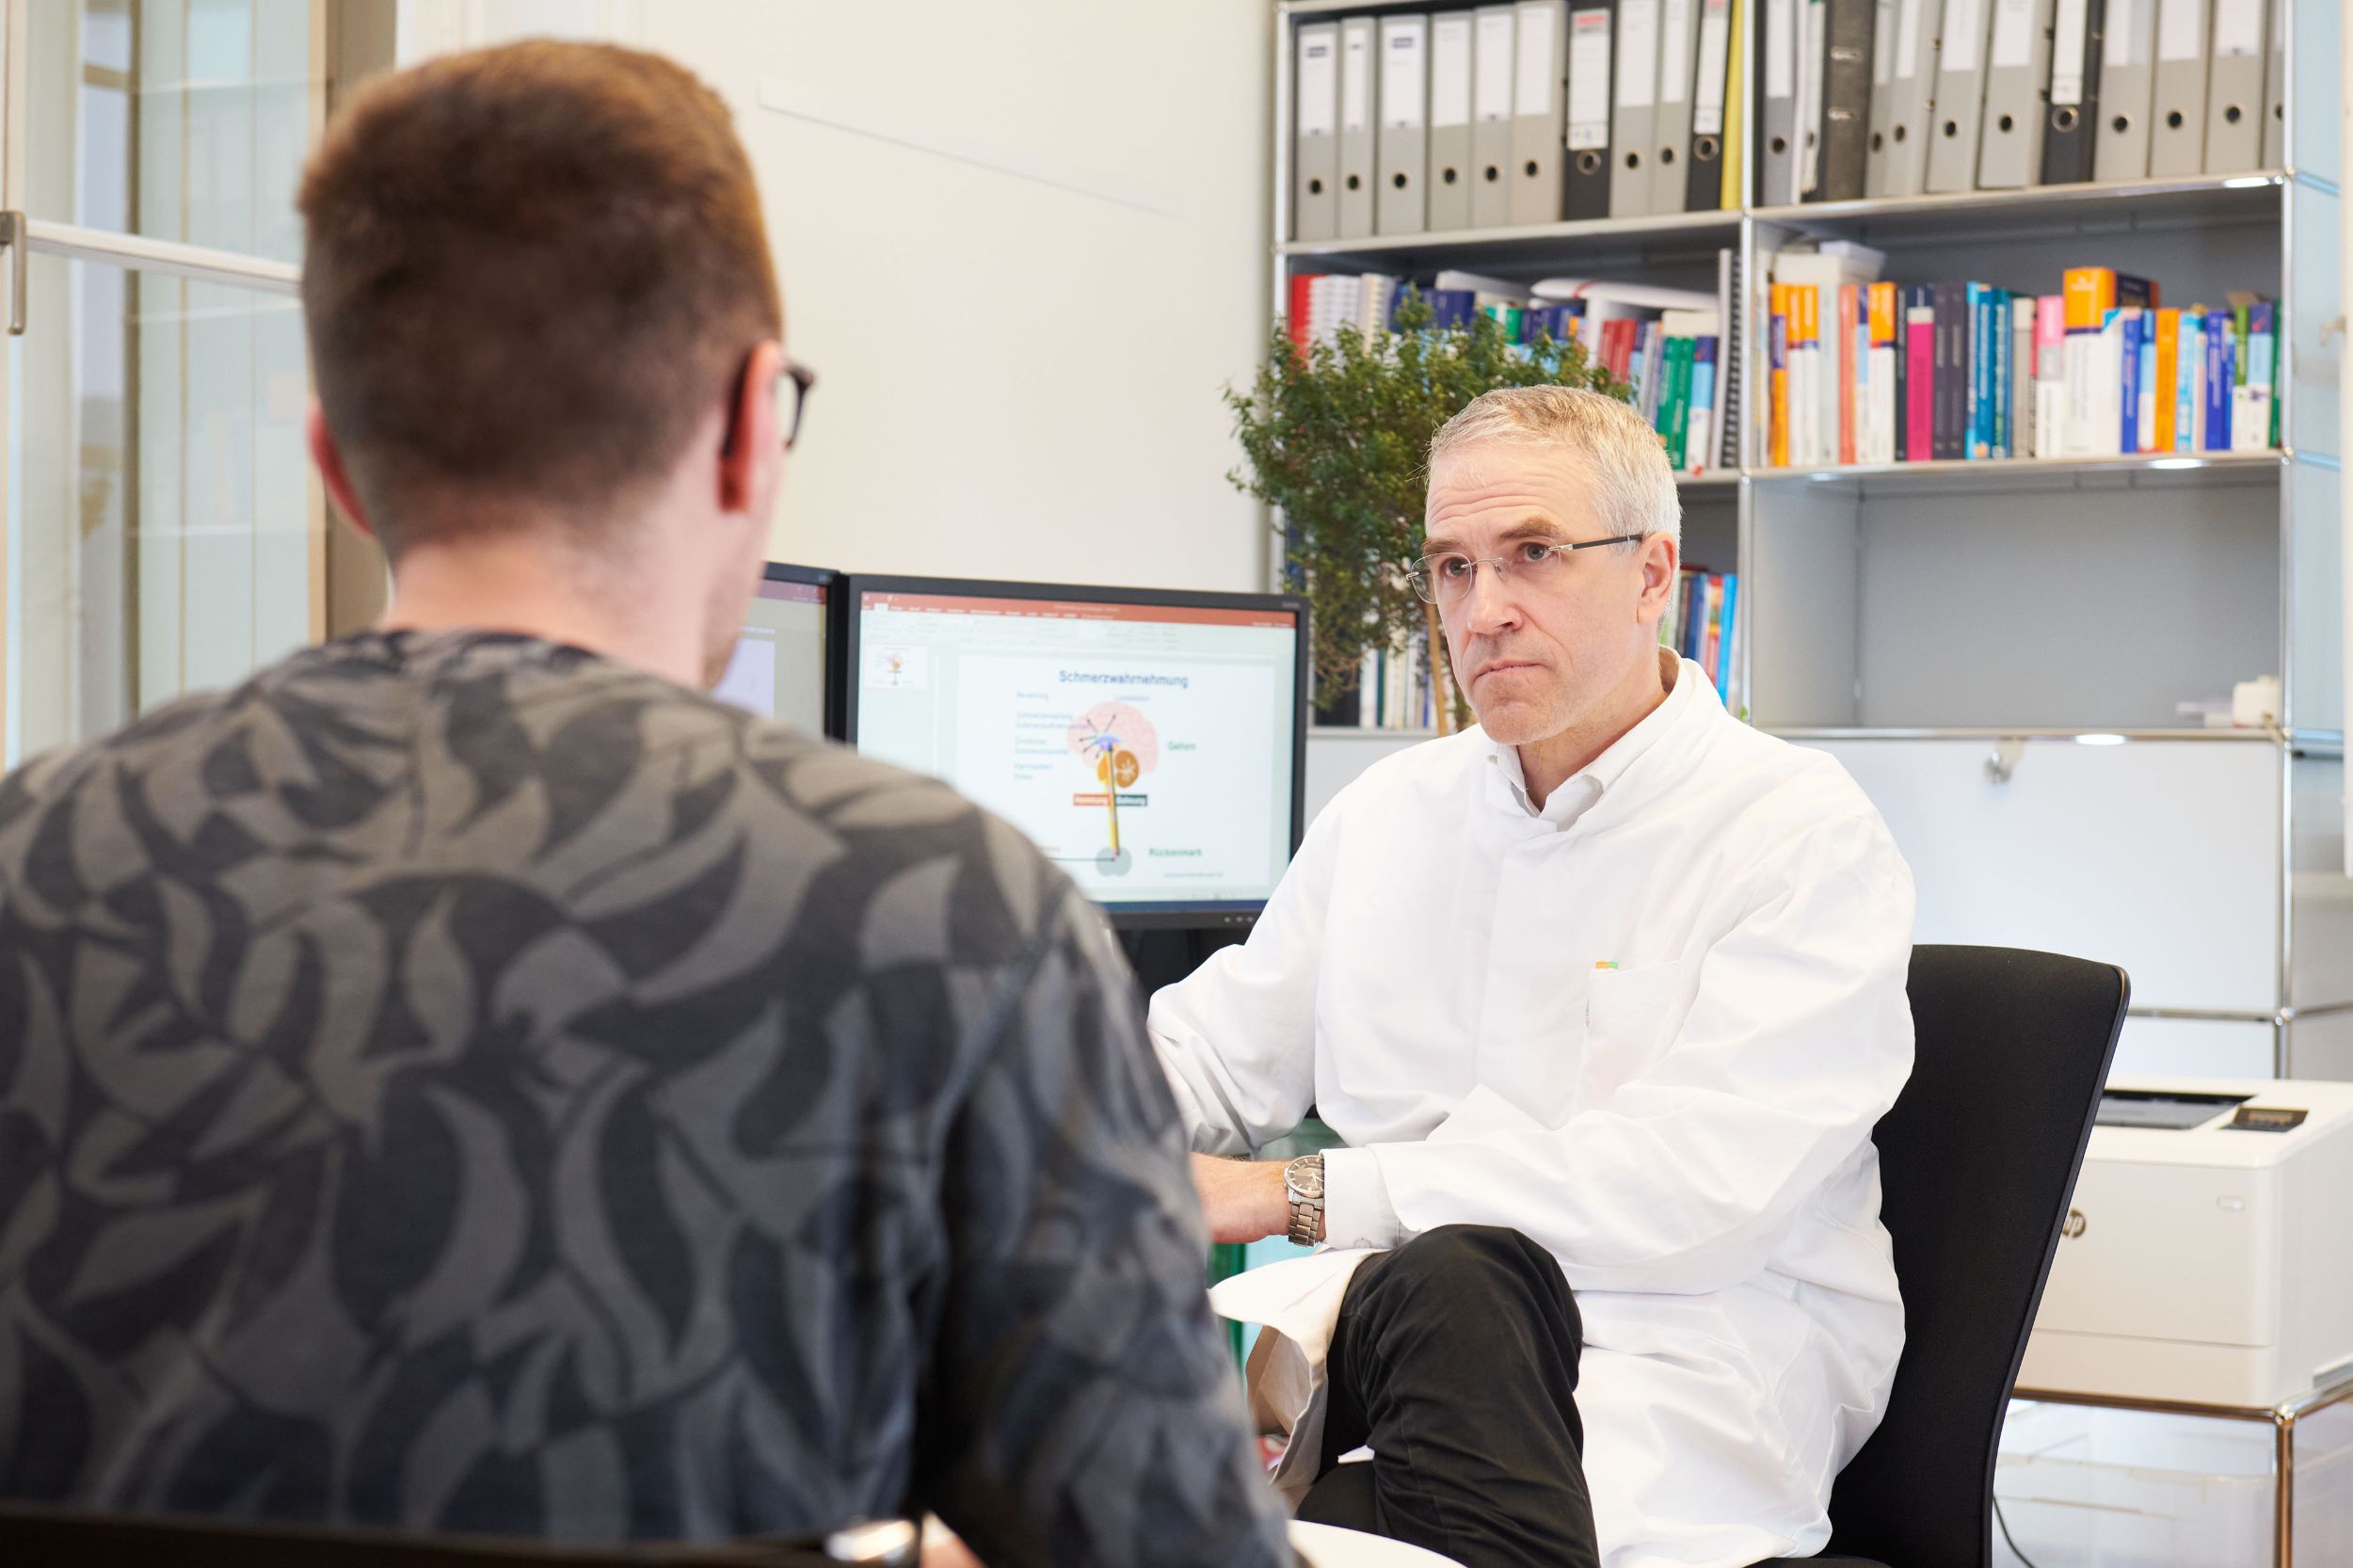 Prof. Rainer Schäfert in conversation with a patient